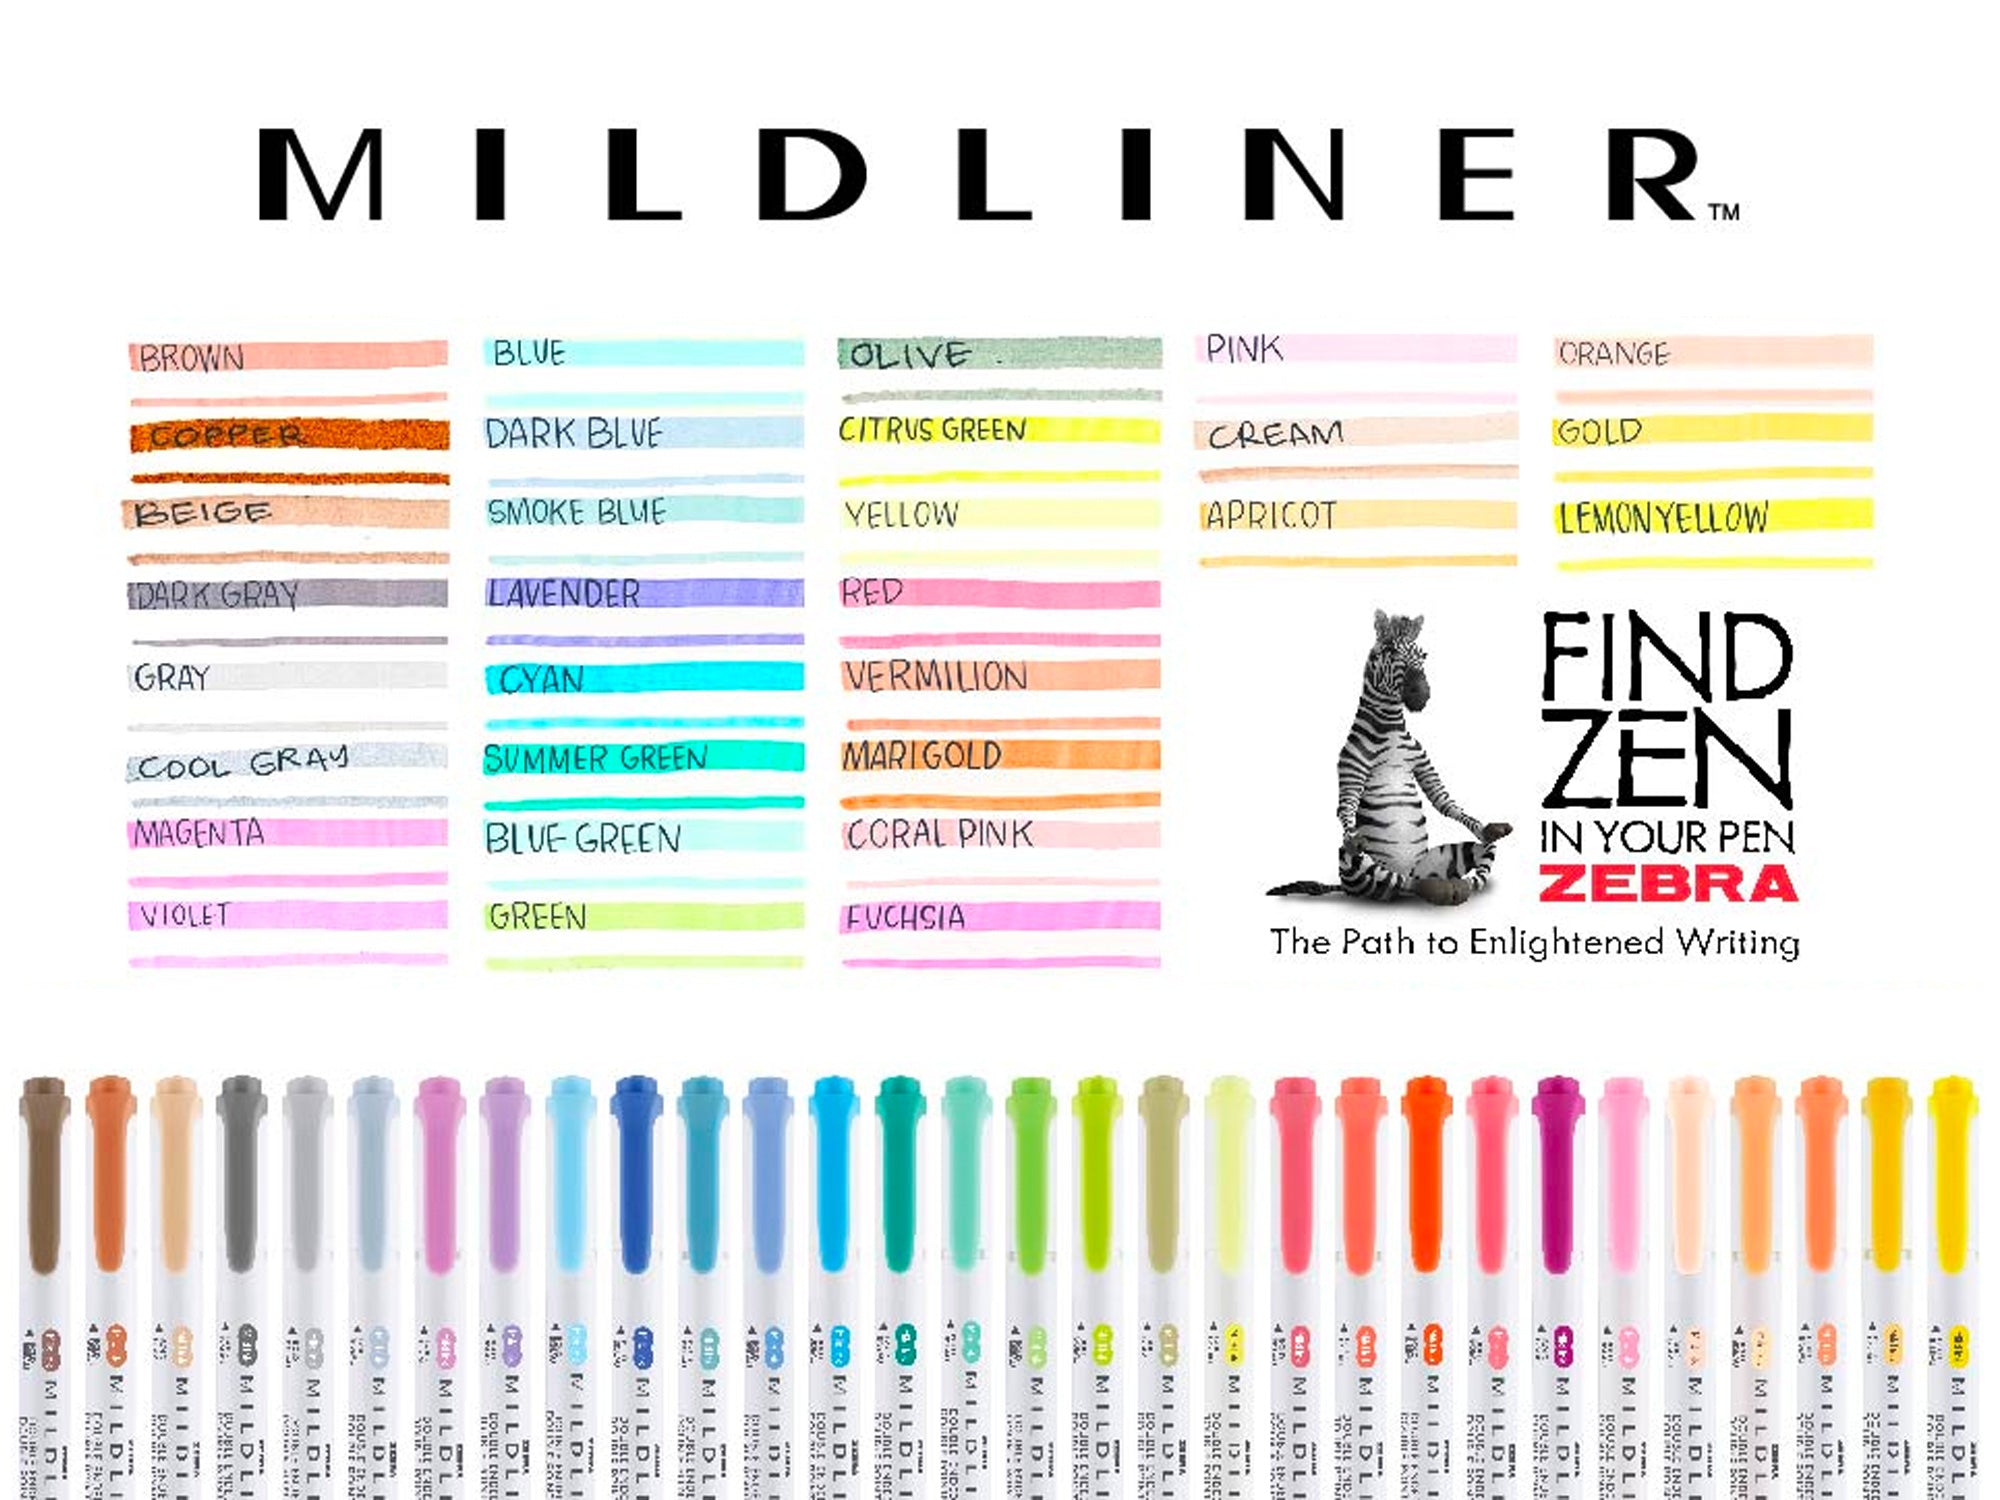 Zebra Limited Edition MildLiner 25 Color Set